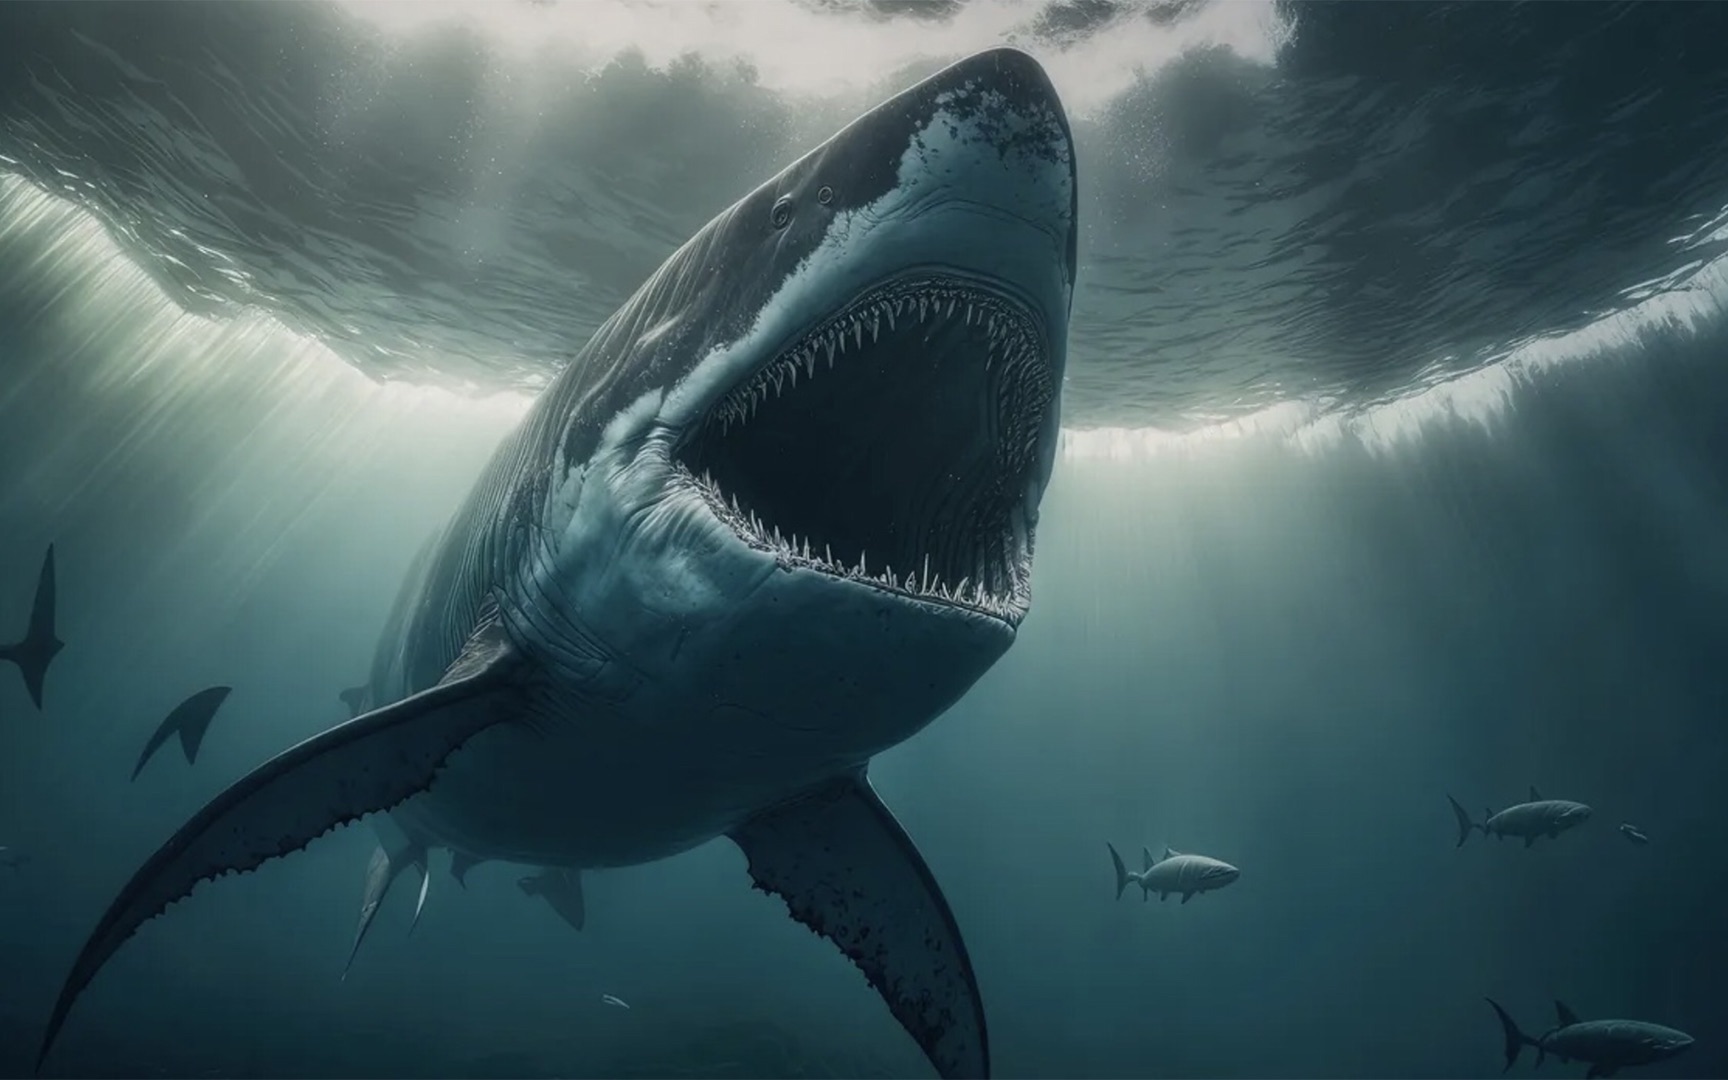 《巨齿鲨2》热映,巨齿鲨还可能存在吗?大白鲨如何导致其灭绝